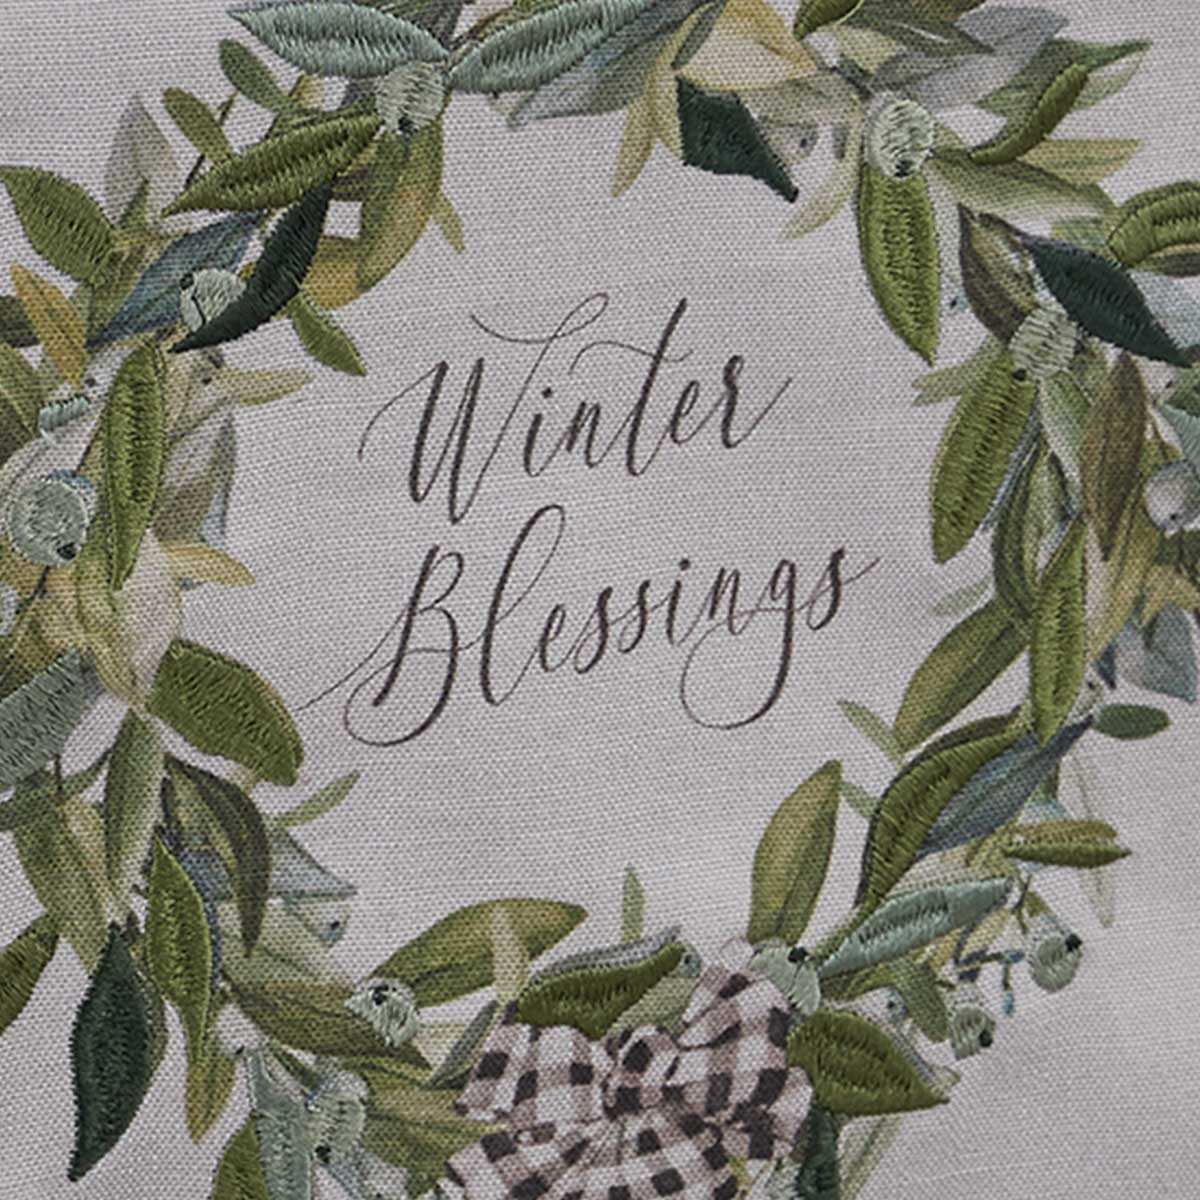 Winter Blessings Table Runner - 15x72 Park Designs